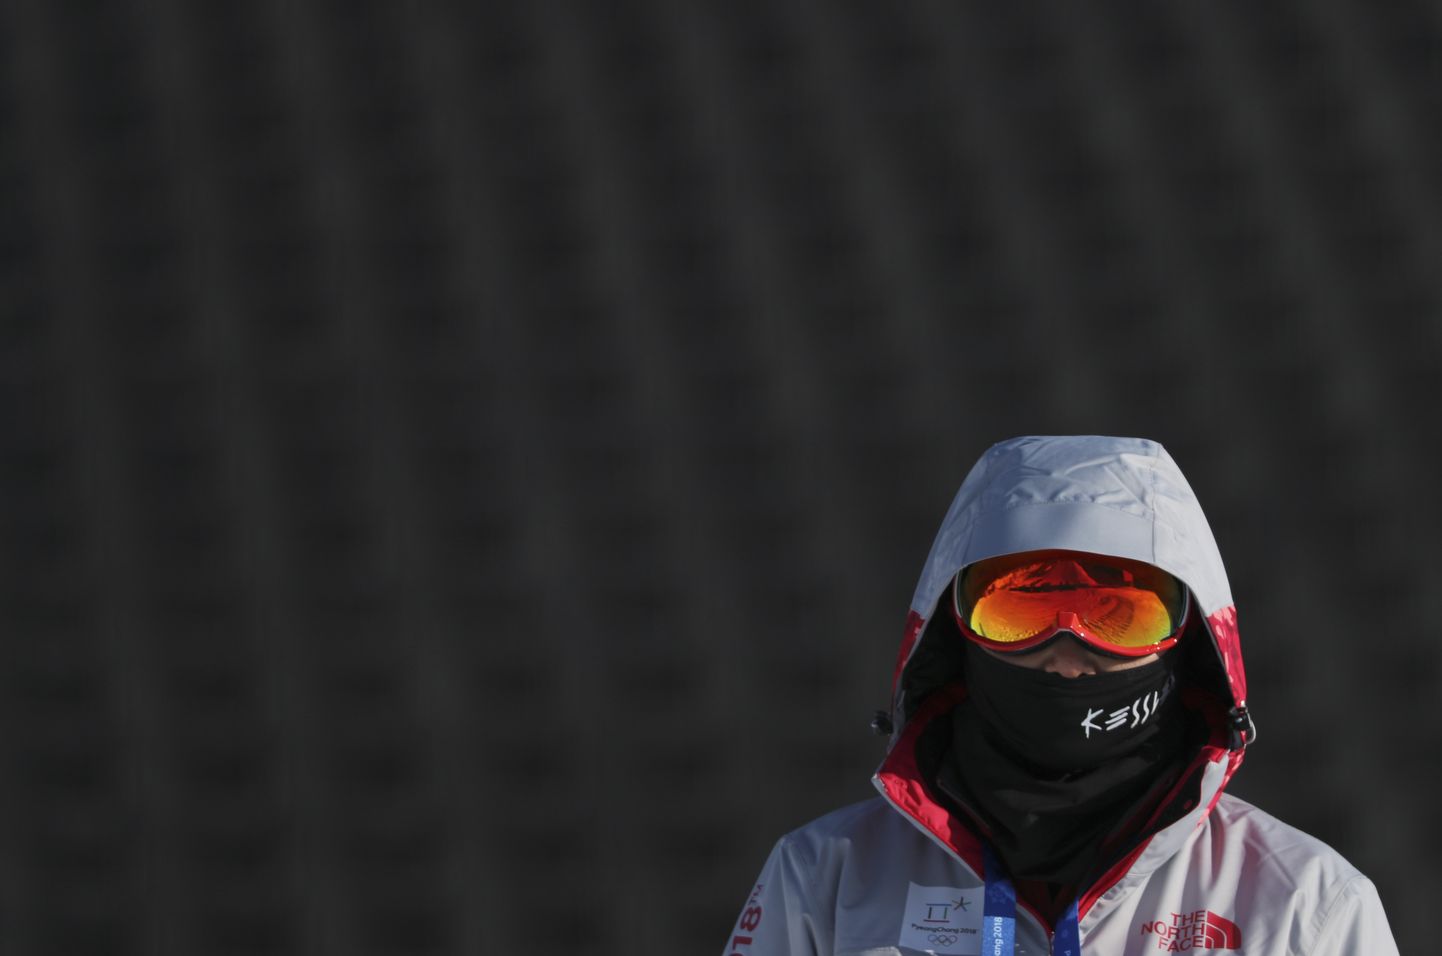 Lõuna-Ameerika sportlastele on ilmastikuolud Pyeongchangis keerulised. Pilt on illustratiivne.